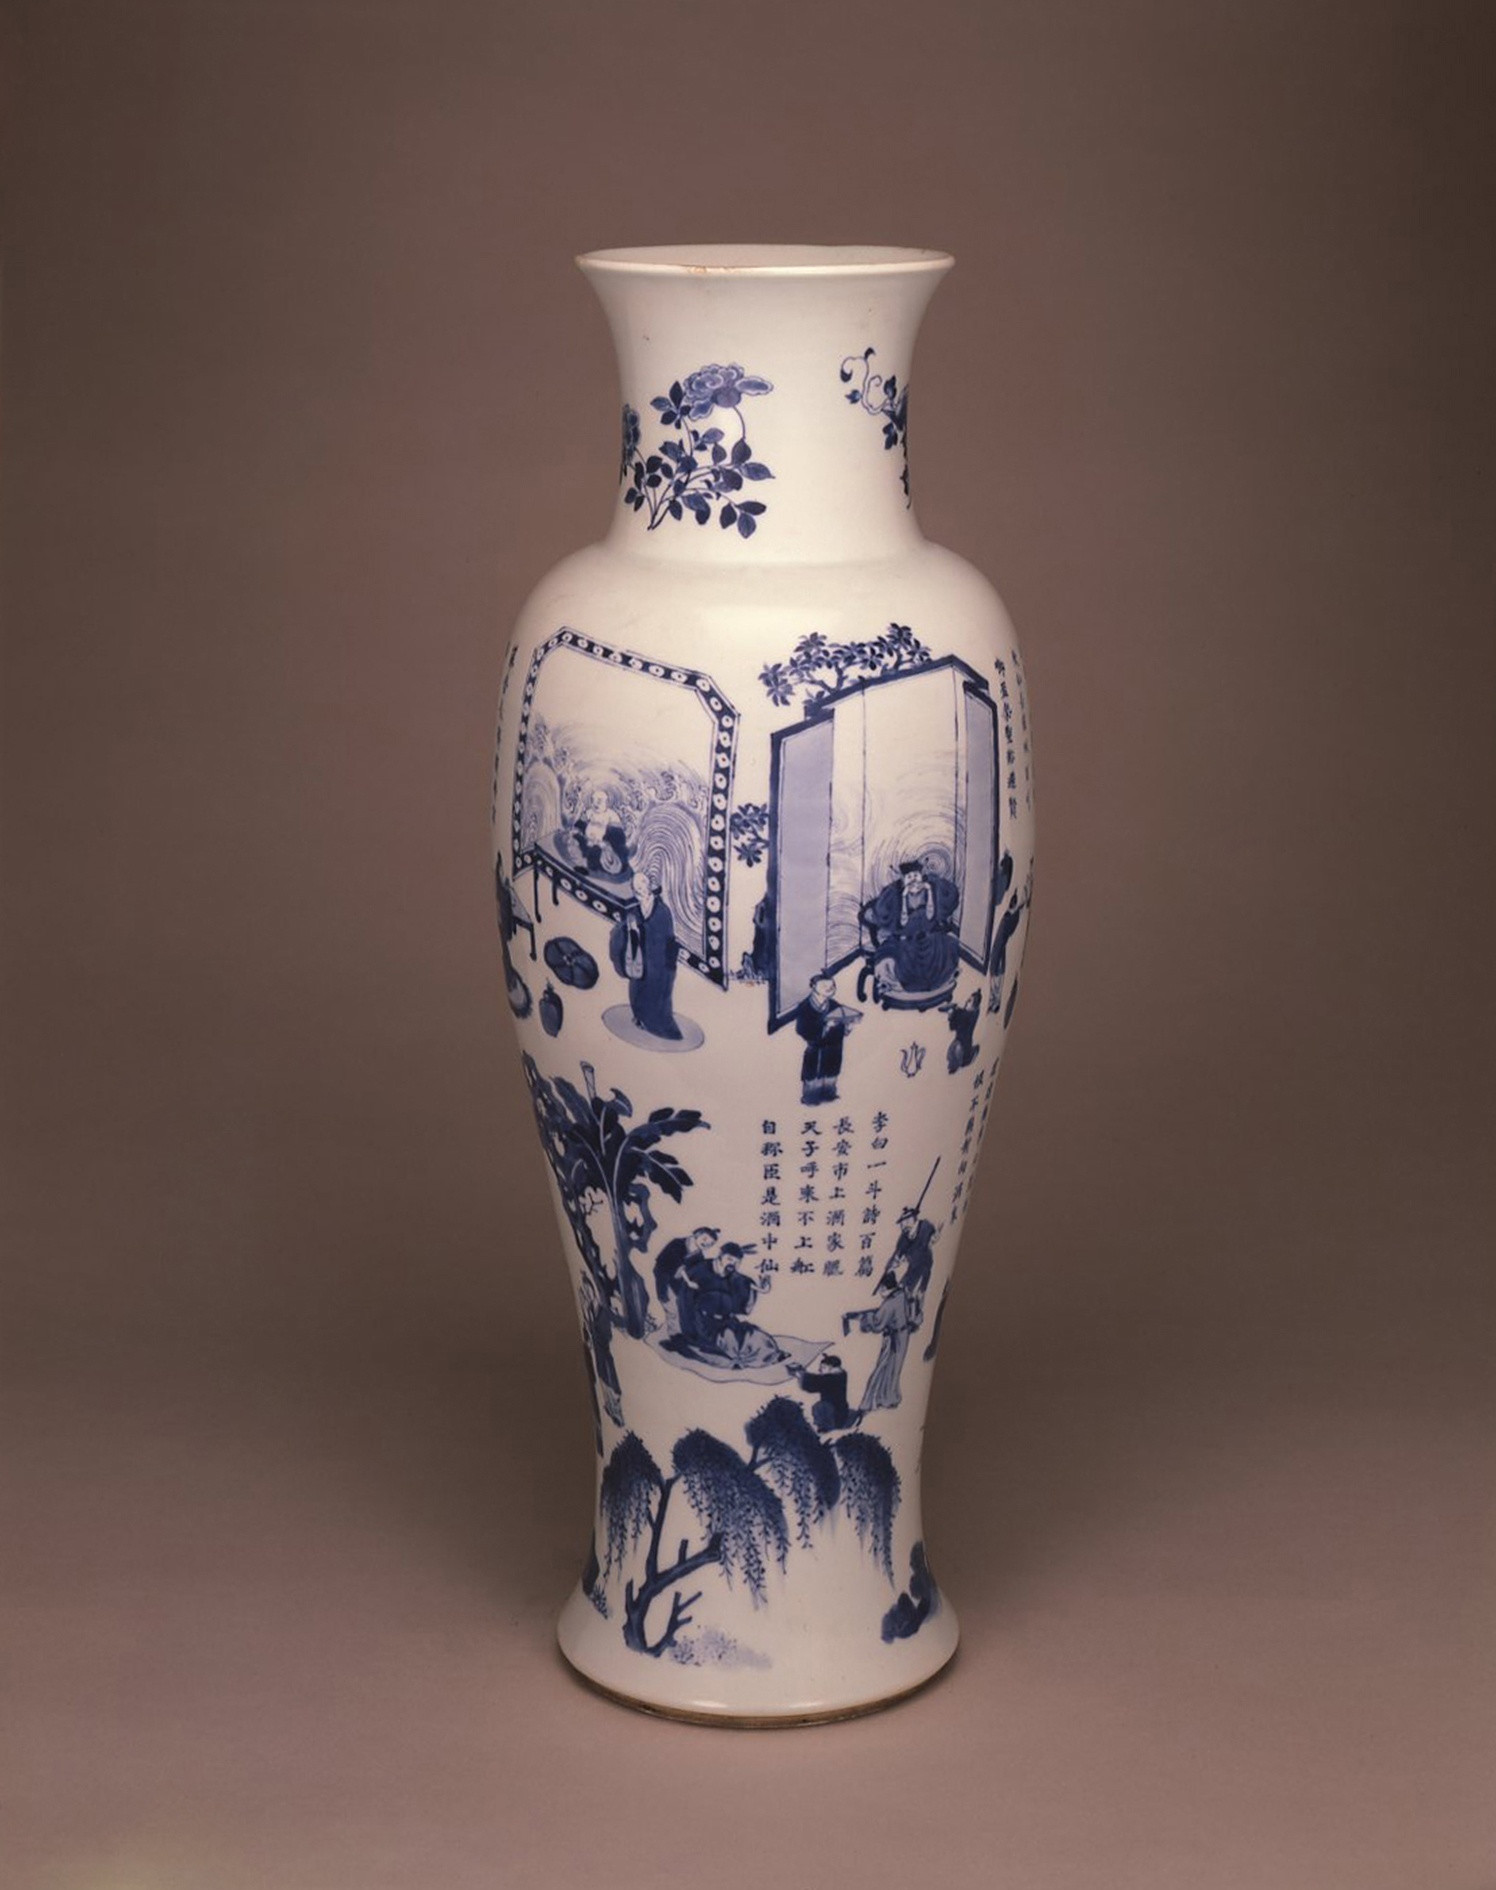 23 Elegant White Ceramic Urn Vase 2024 free download white ceramic urn vase of a tall blue and white baluster vase kangxi 1662 1722 anita gray intended for a tall blue and white baluster vase